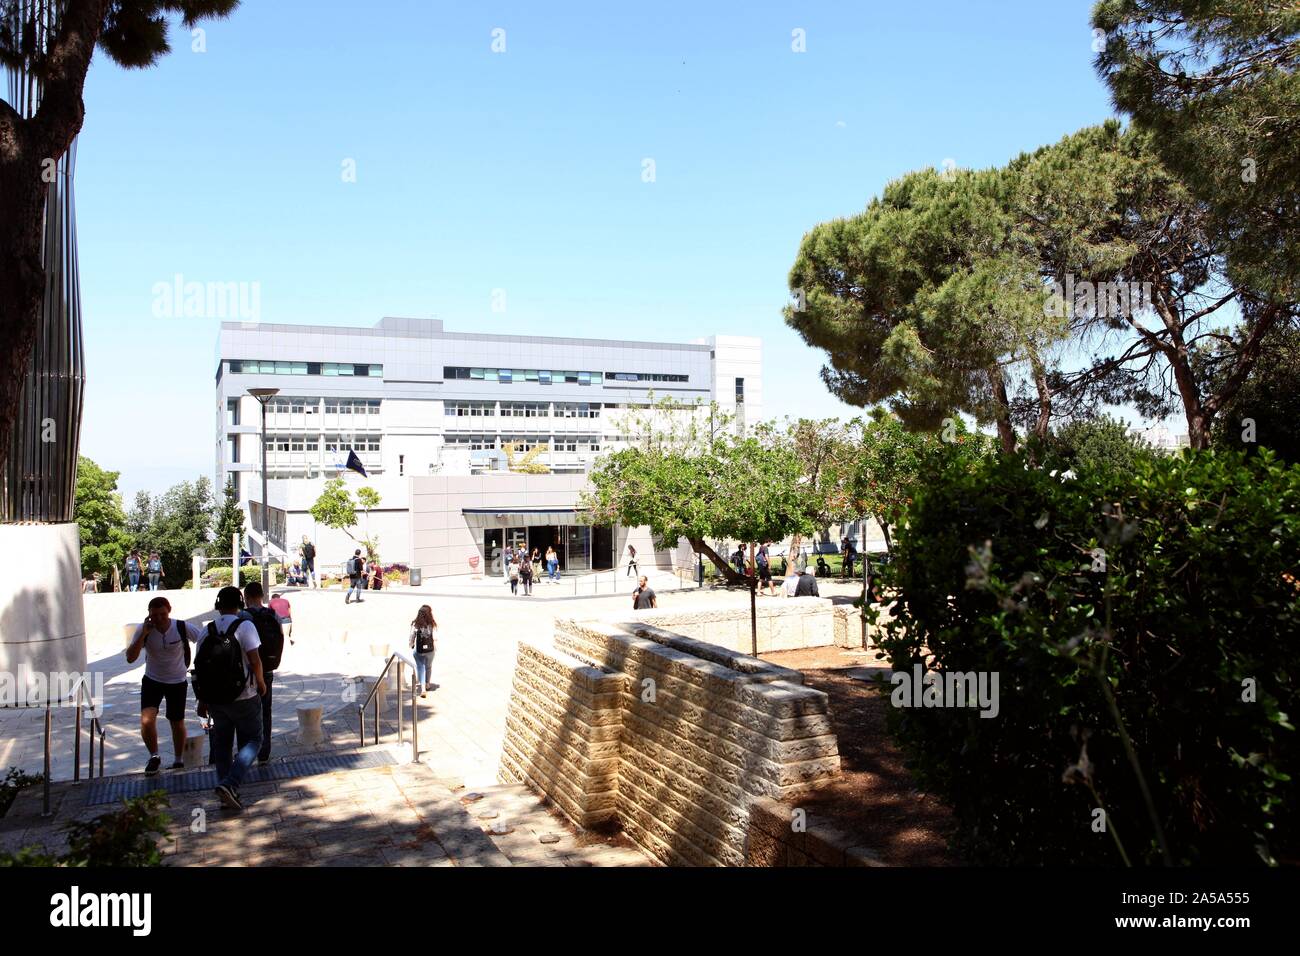 HAIFA, Israele - 23 Maggio 2019: facoltà edificio nel "Technion" - Istituto Israeliano di Tecnologia che è considerato essere uno dei leader di academic Foto Stock